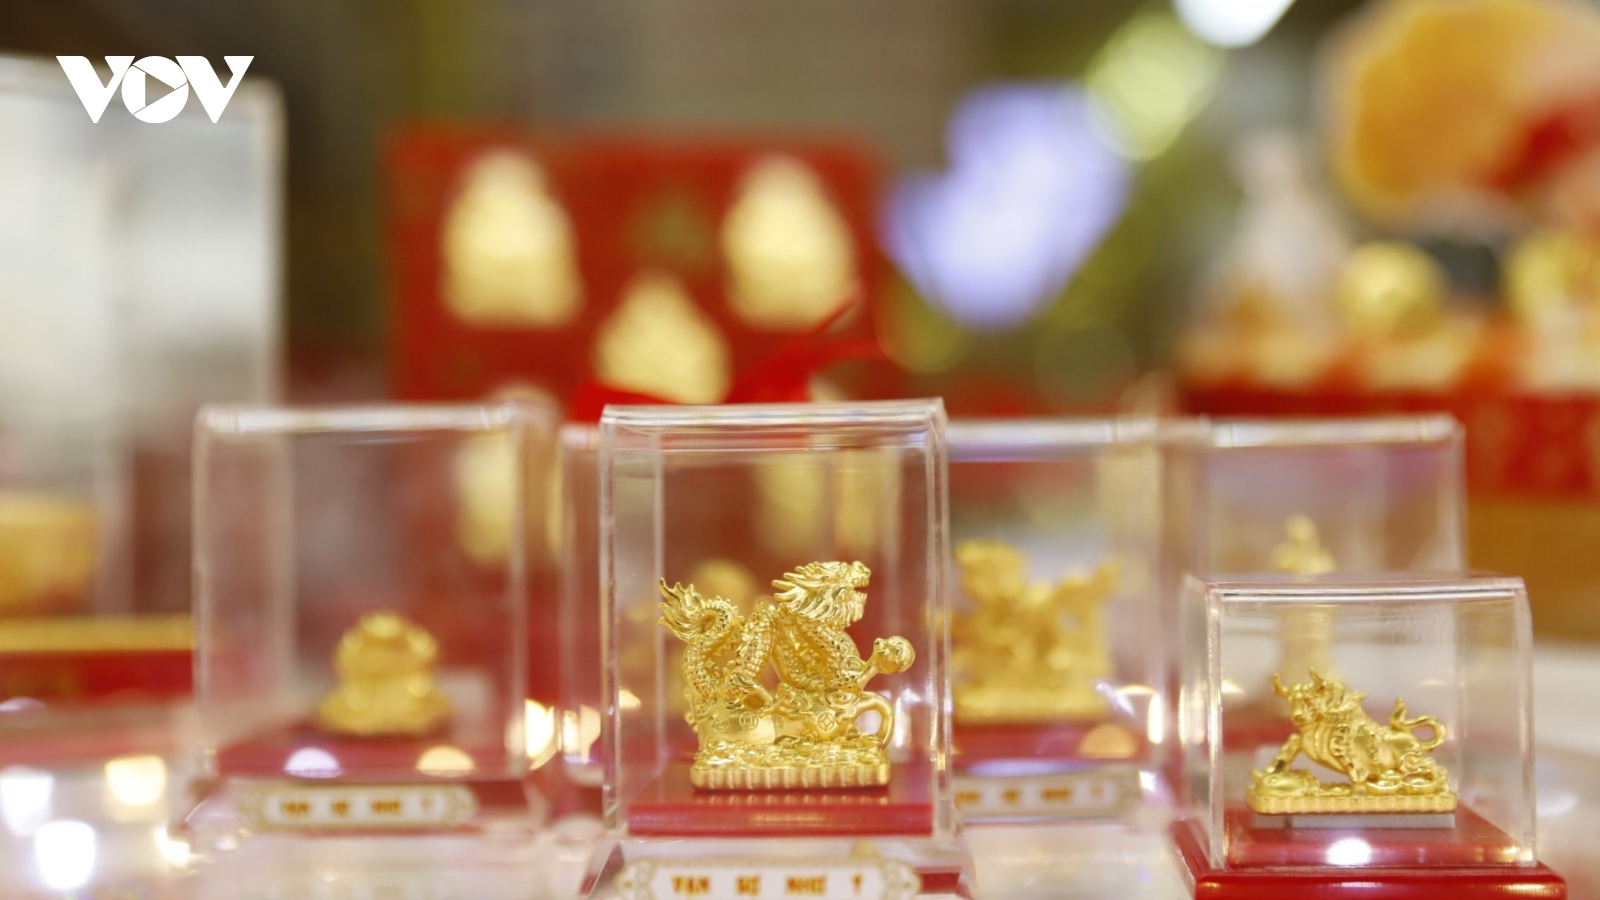 Giá vàng hôm nay 24/5: Vàng SJC giảm về mức 89,5 triệu đồng/lượng